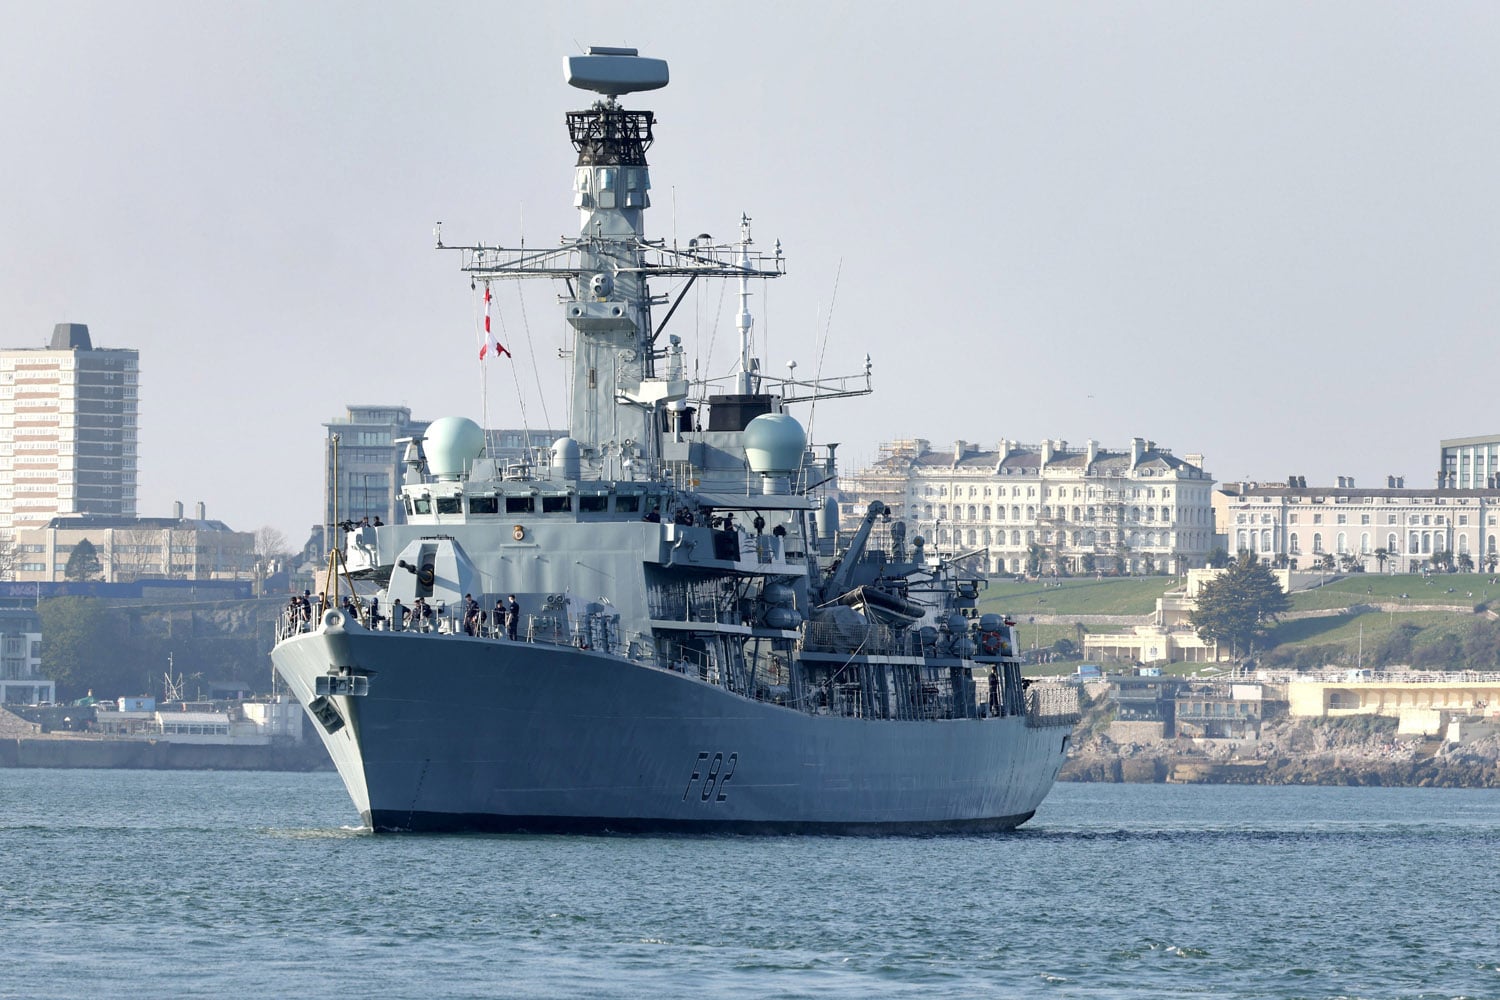 Britannian fregatti liittyy Norjan laivaston aluksiin, jotka vartioivat Pohjanmeren putkia